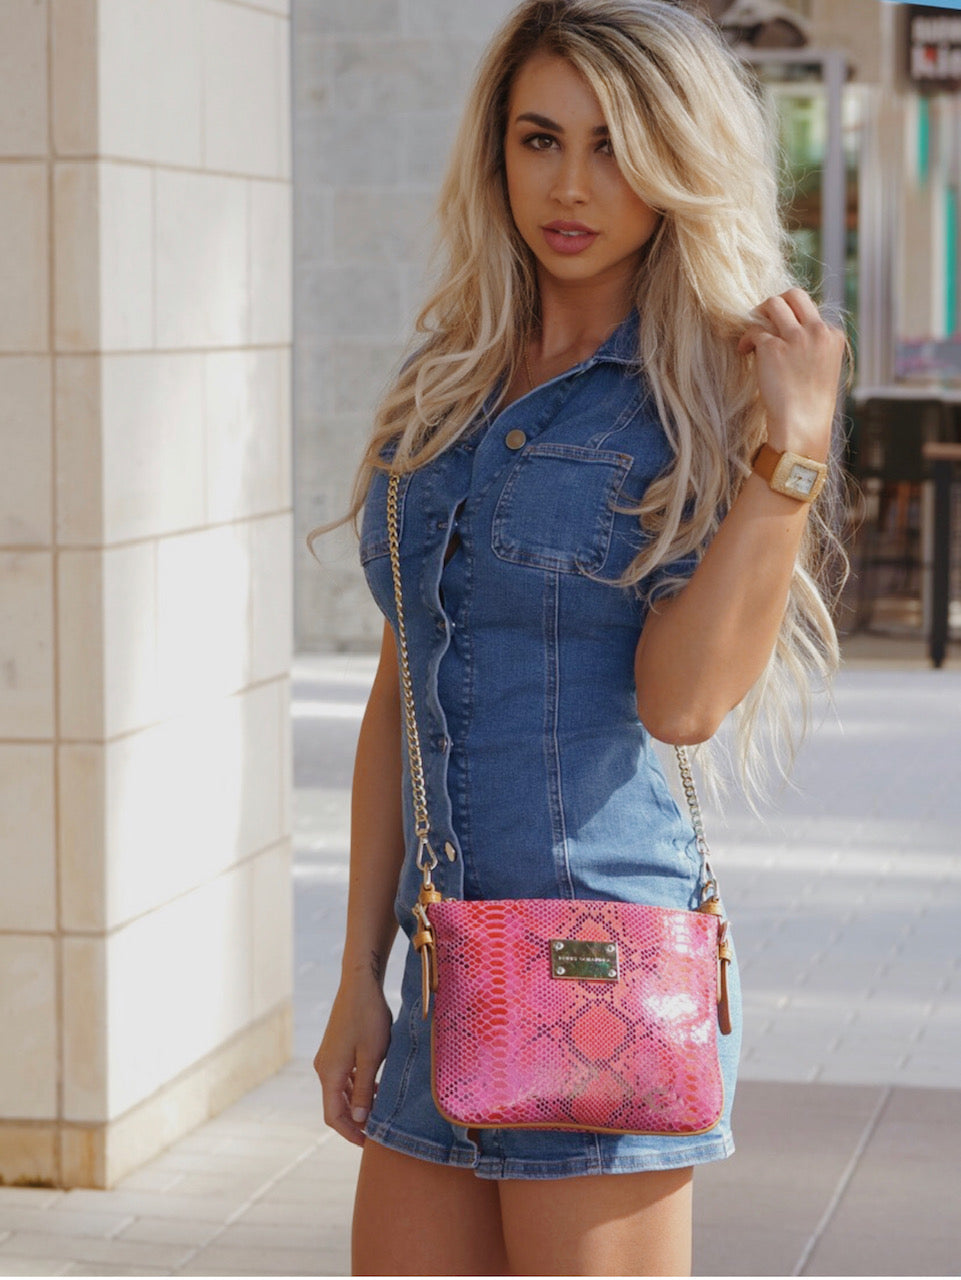 Designer Pink Leather Messenger bag crossbody bag